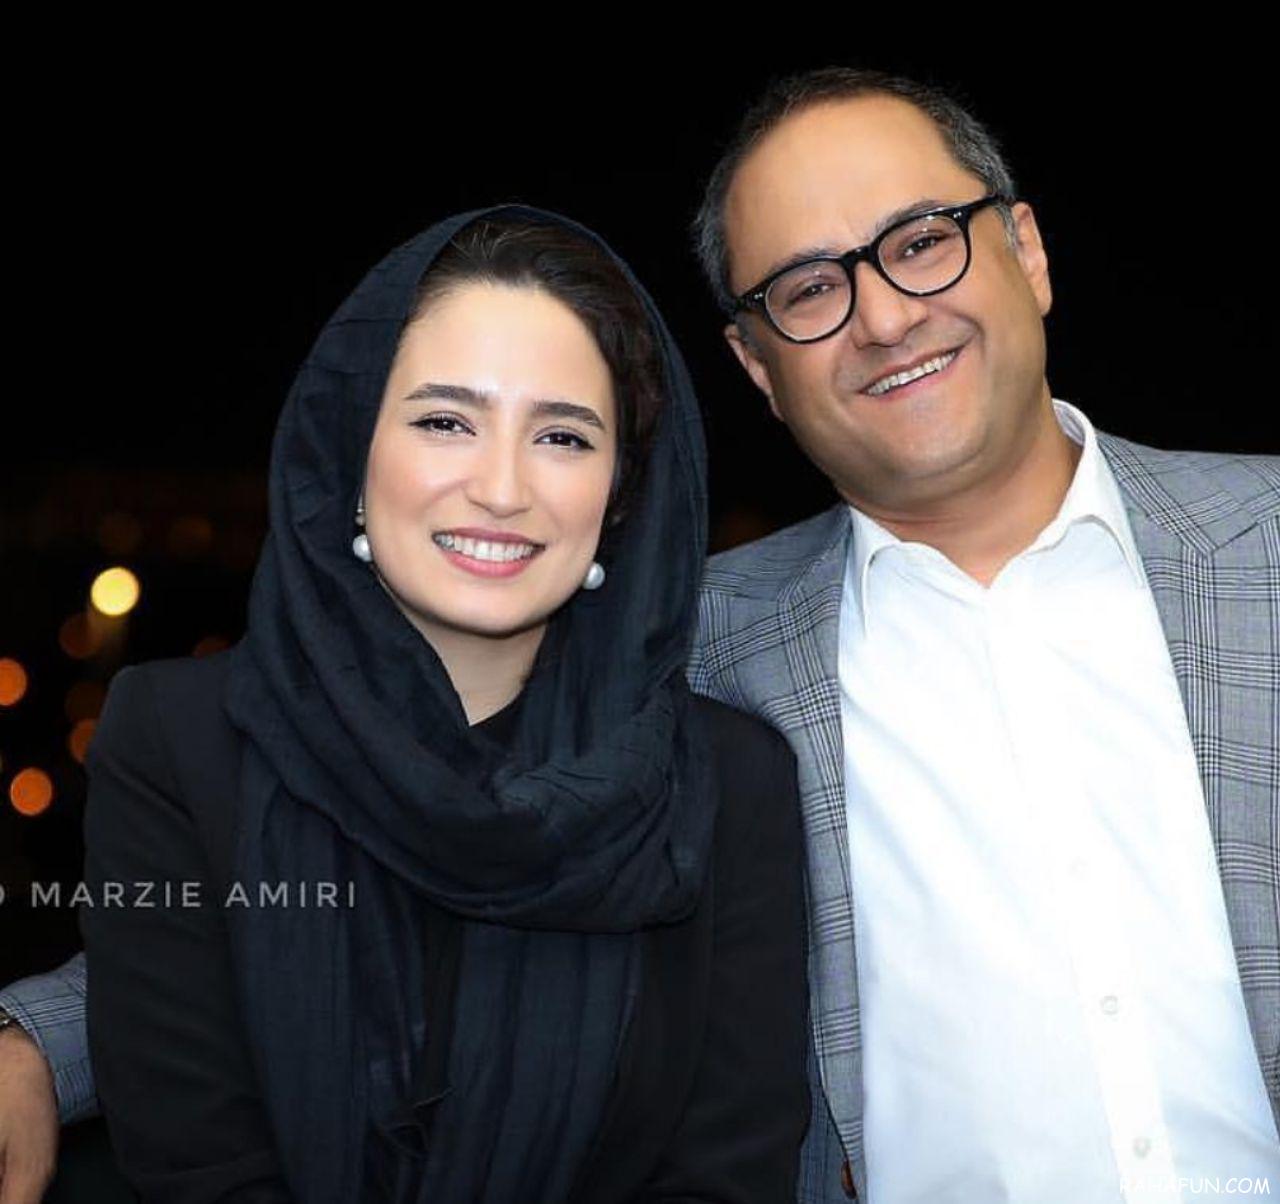 عکس های جدید بازیگران ایرانی در اینستاگرام ۹۷